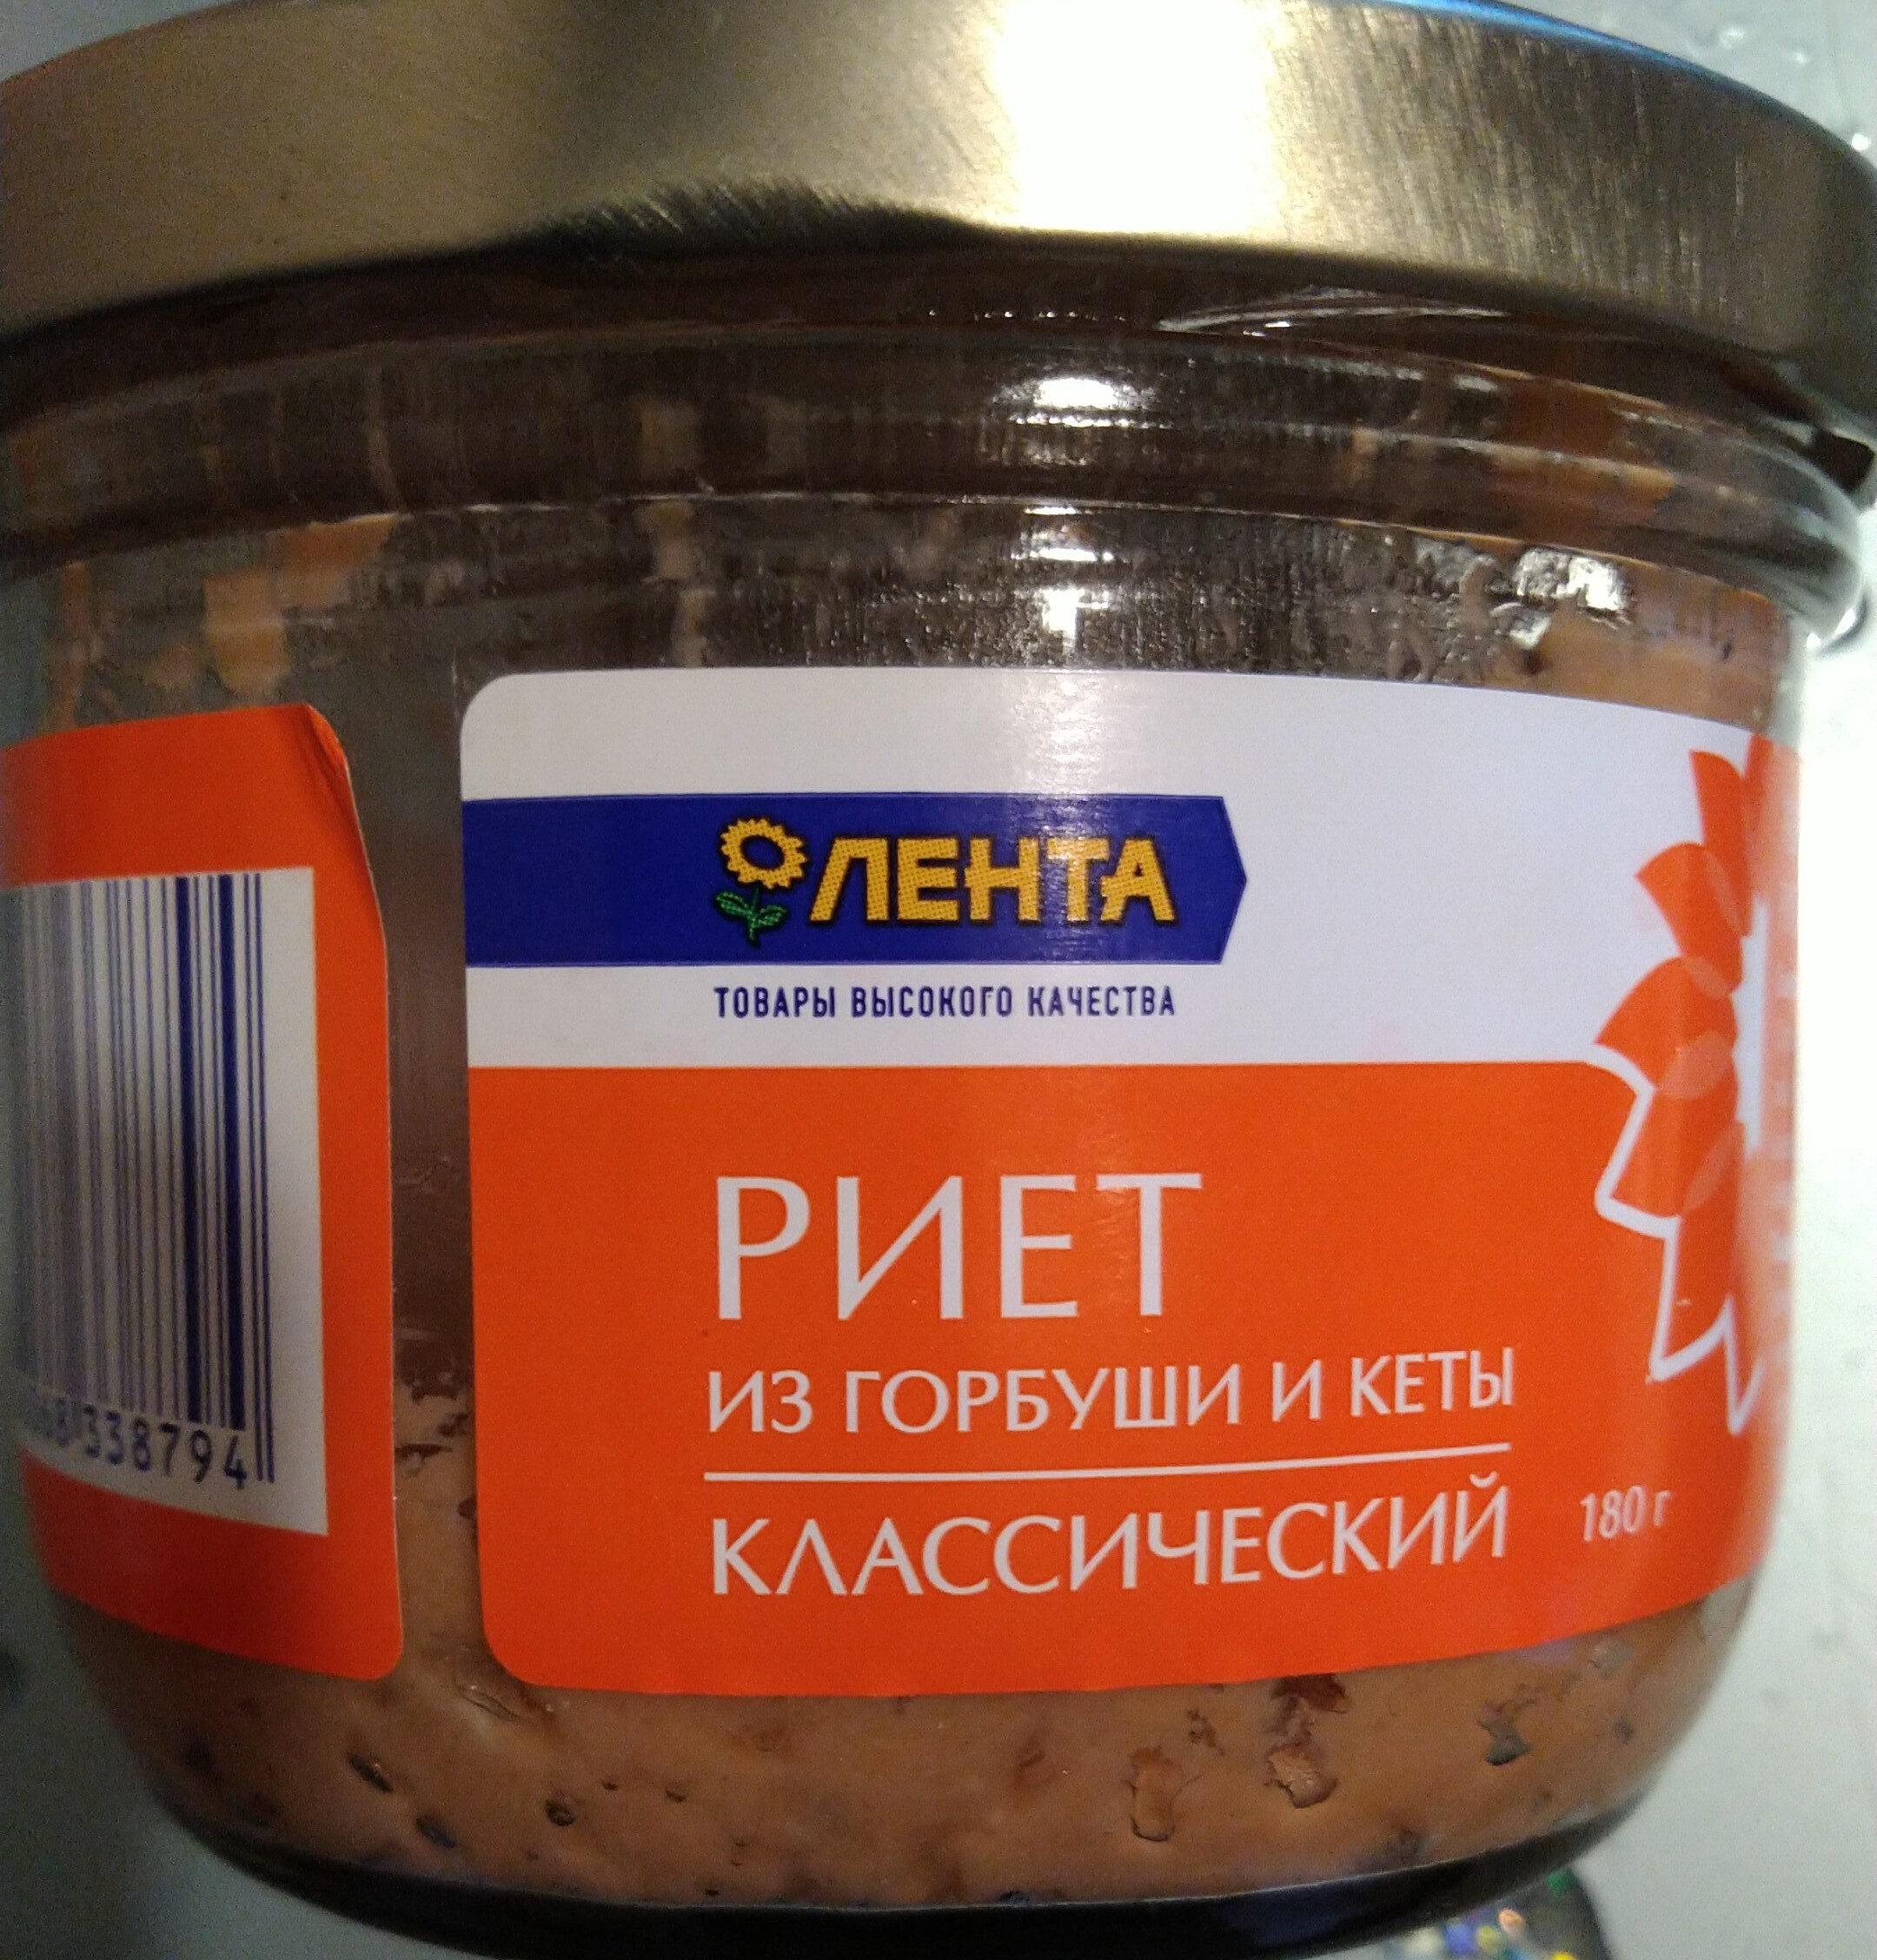 риет из горбуши и кеты - Product - ru